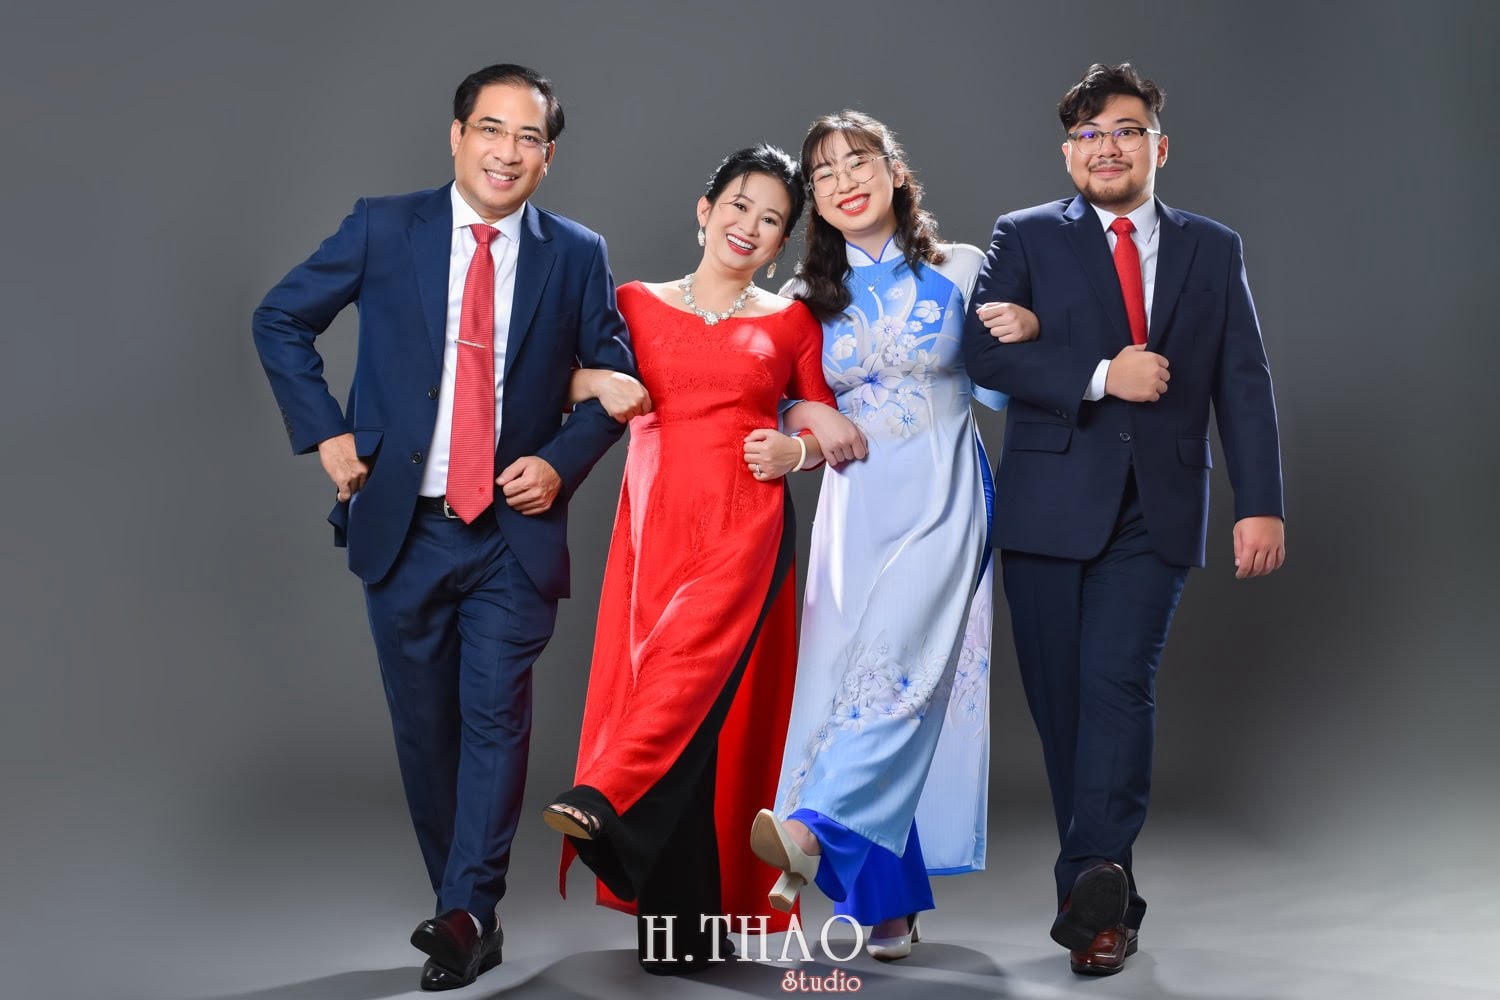 Anh gia dinh 4 nguoi 4 min - 45 cách tạo dáng chụp ảnh gia đình 4 người ấn tượng nhất - HThao Studio